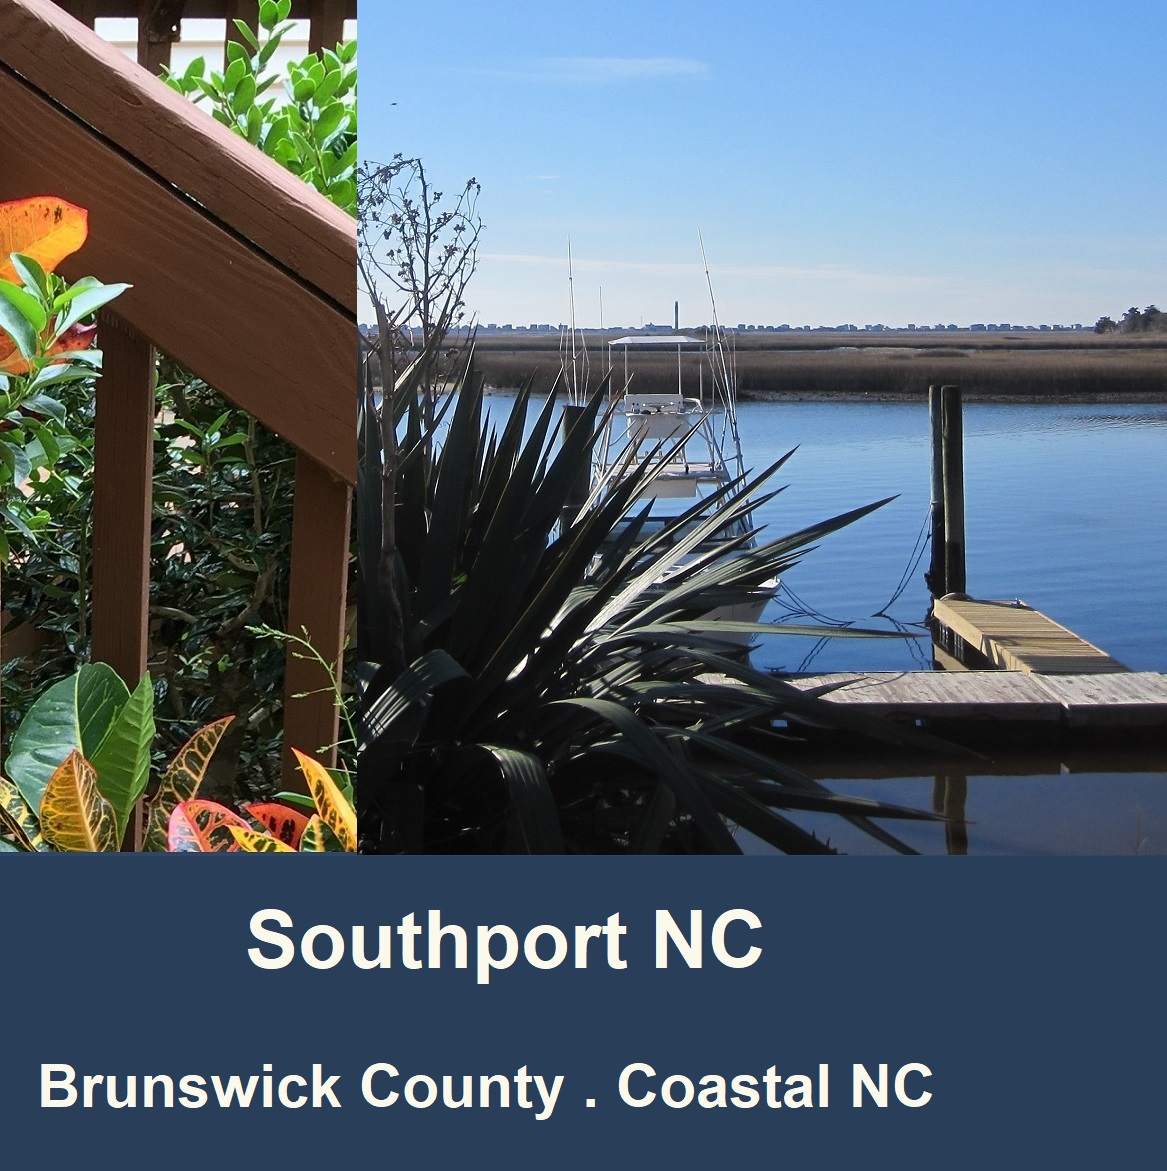 Southport NC . Brunswick County . Coastal NC